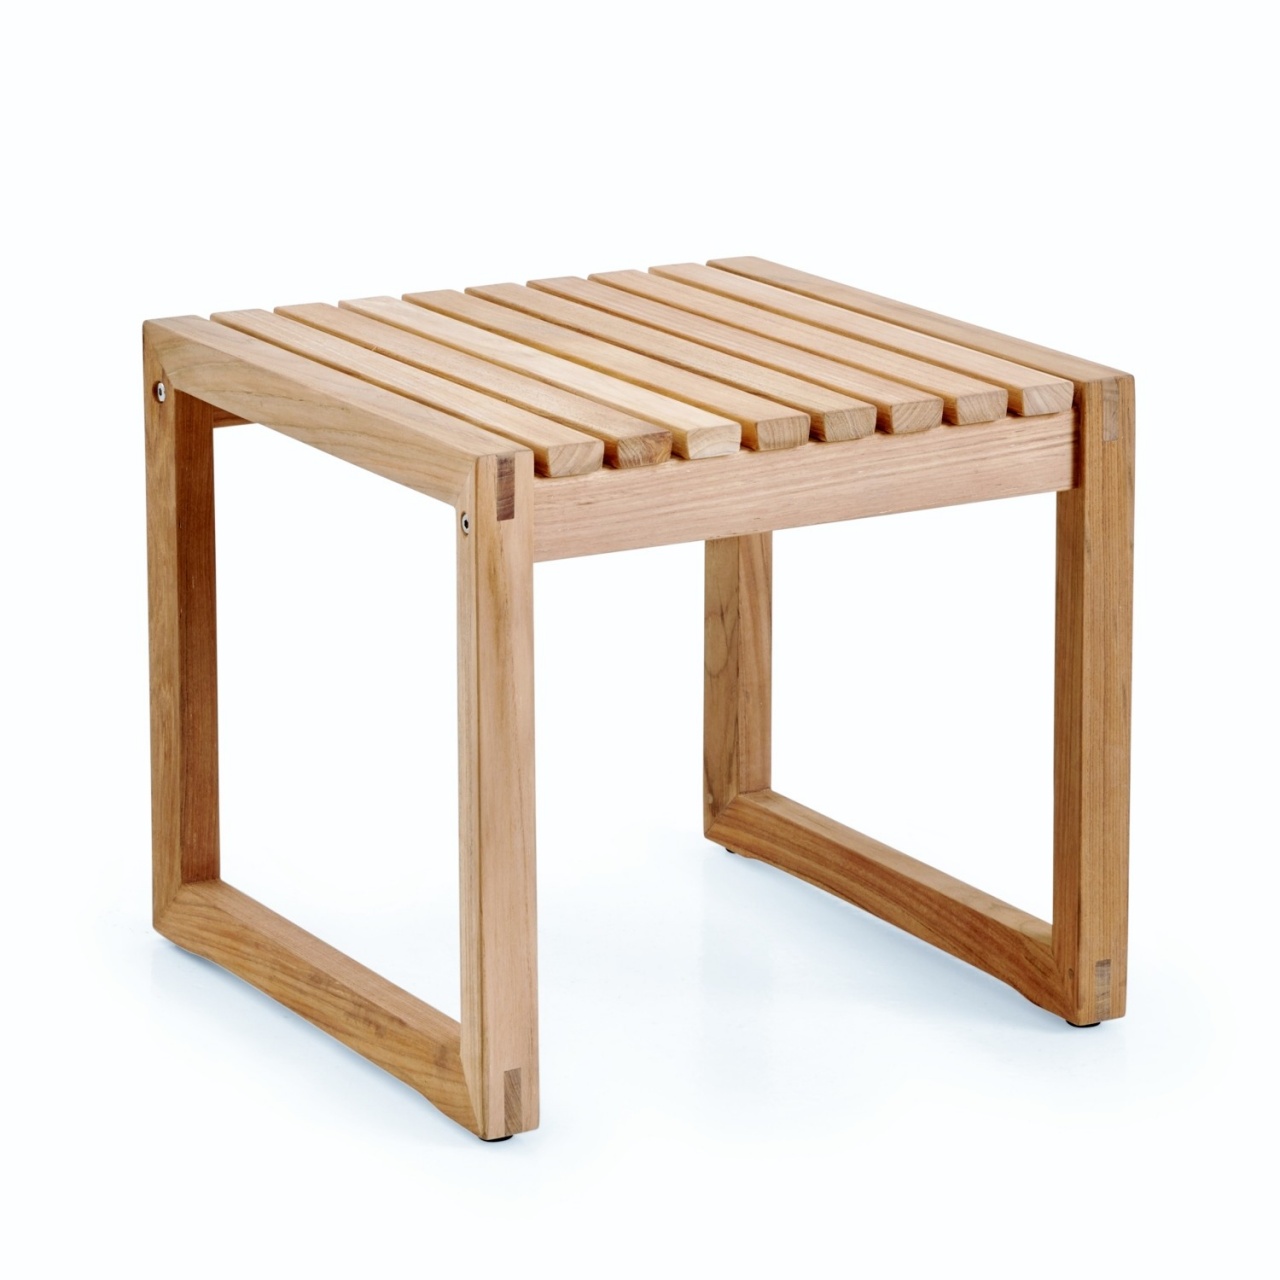 Gartentisch Teak Einzigartig Teak Wood Outdoor Table – Outdoor Furniture